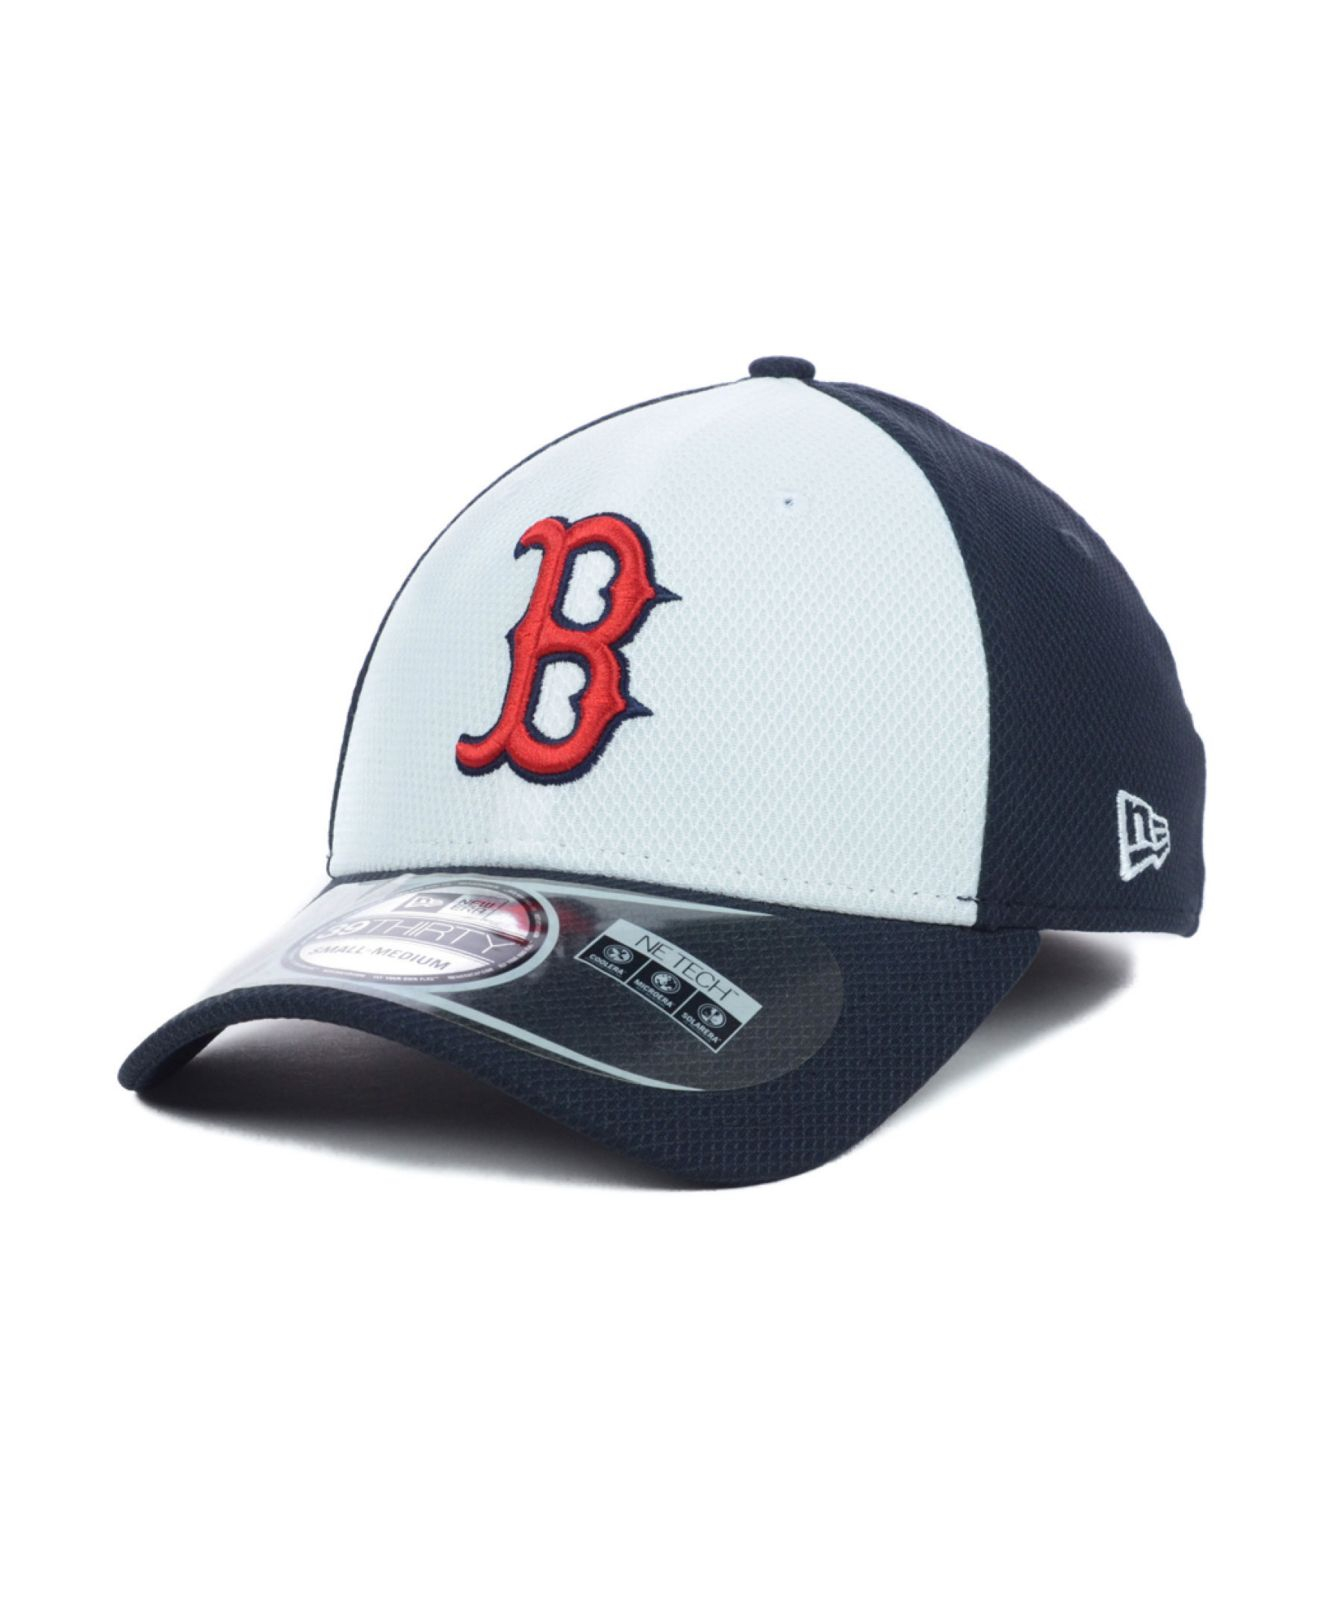 KTZ Synthetic Boston Red Sox Diamond Era 39thirty Cap in White/Navy ...